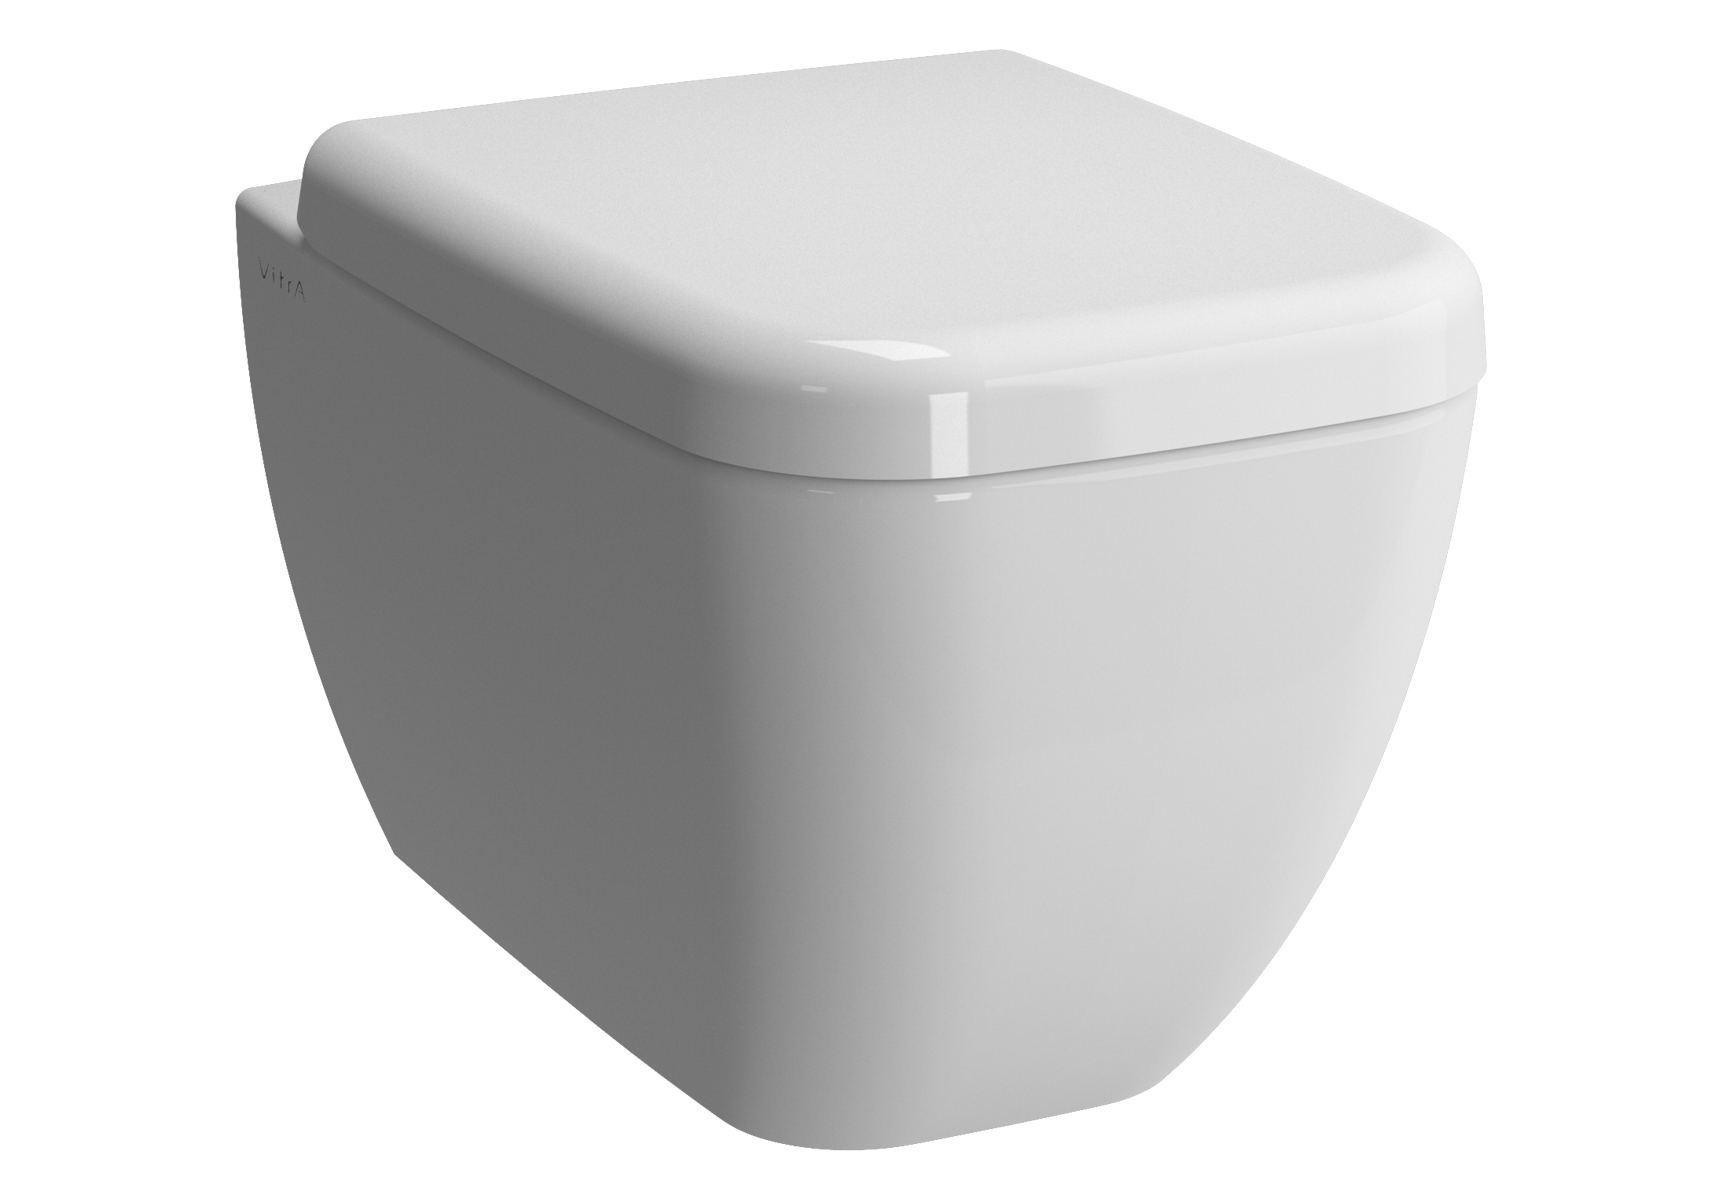 Keramik toilette - Die ausgezeichnetesten Keramik toilette im Vergleich